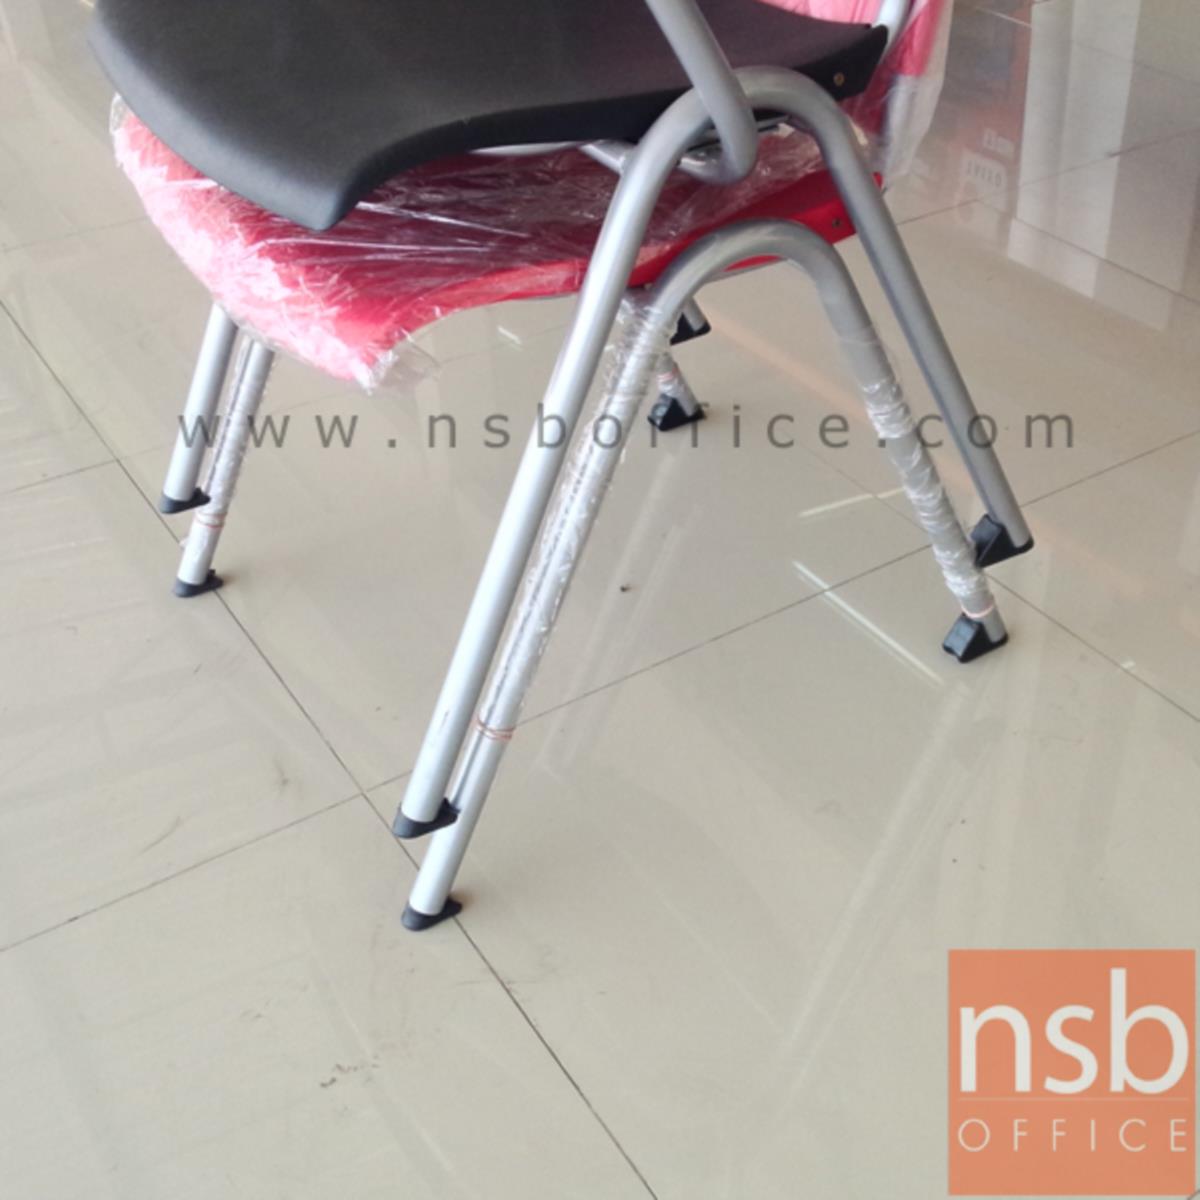 เก้าอี้อเนกประสงค์เฟรมโพลี่ รุ่น Merlock (เมอร์ล็อก)  ขาเหล็กพ่นสี epoxy